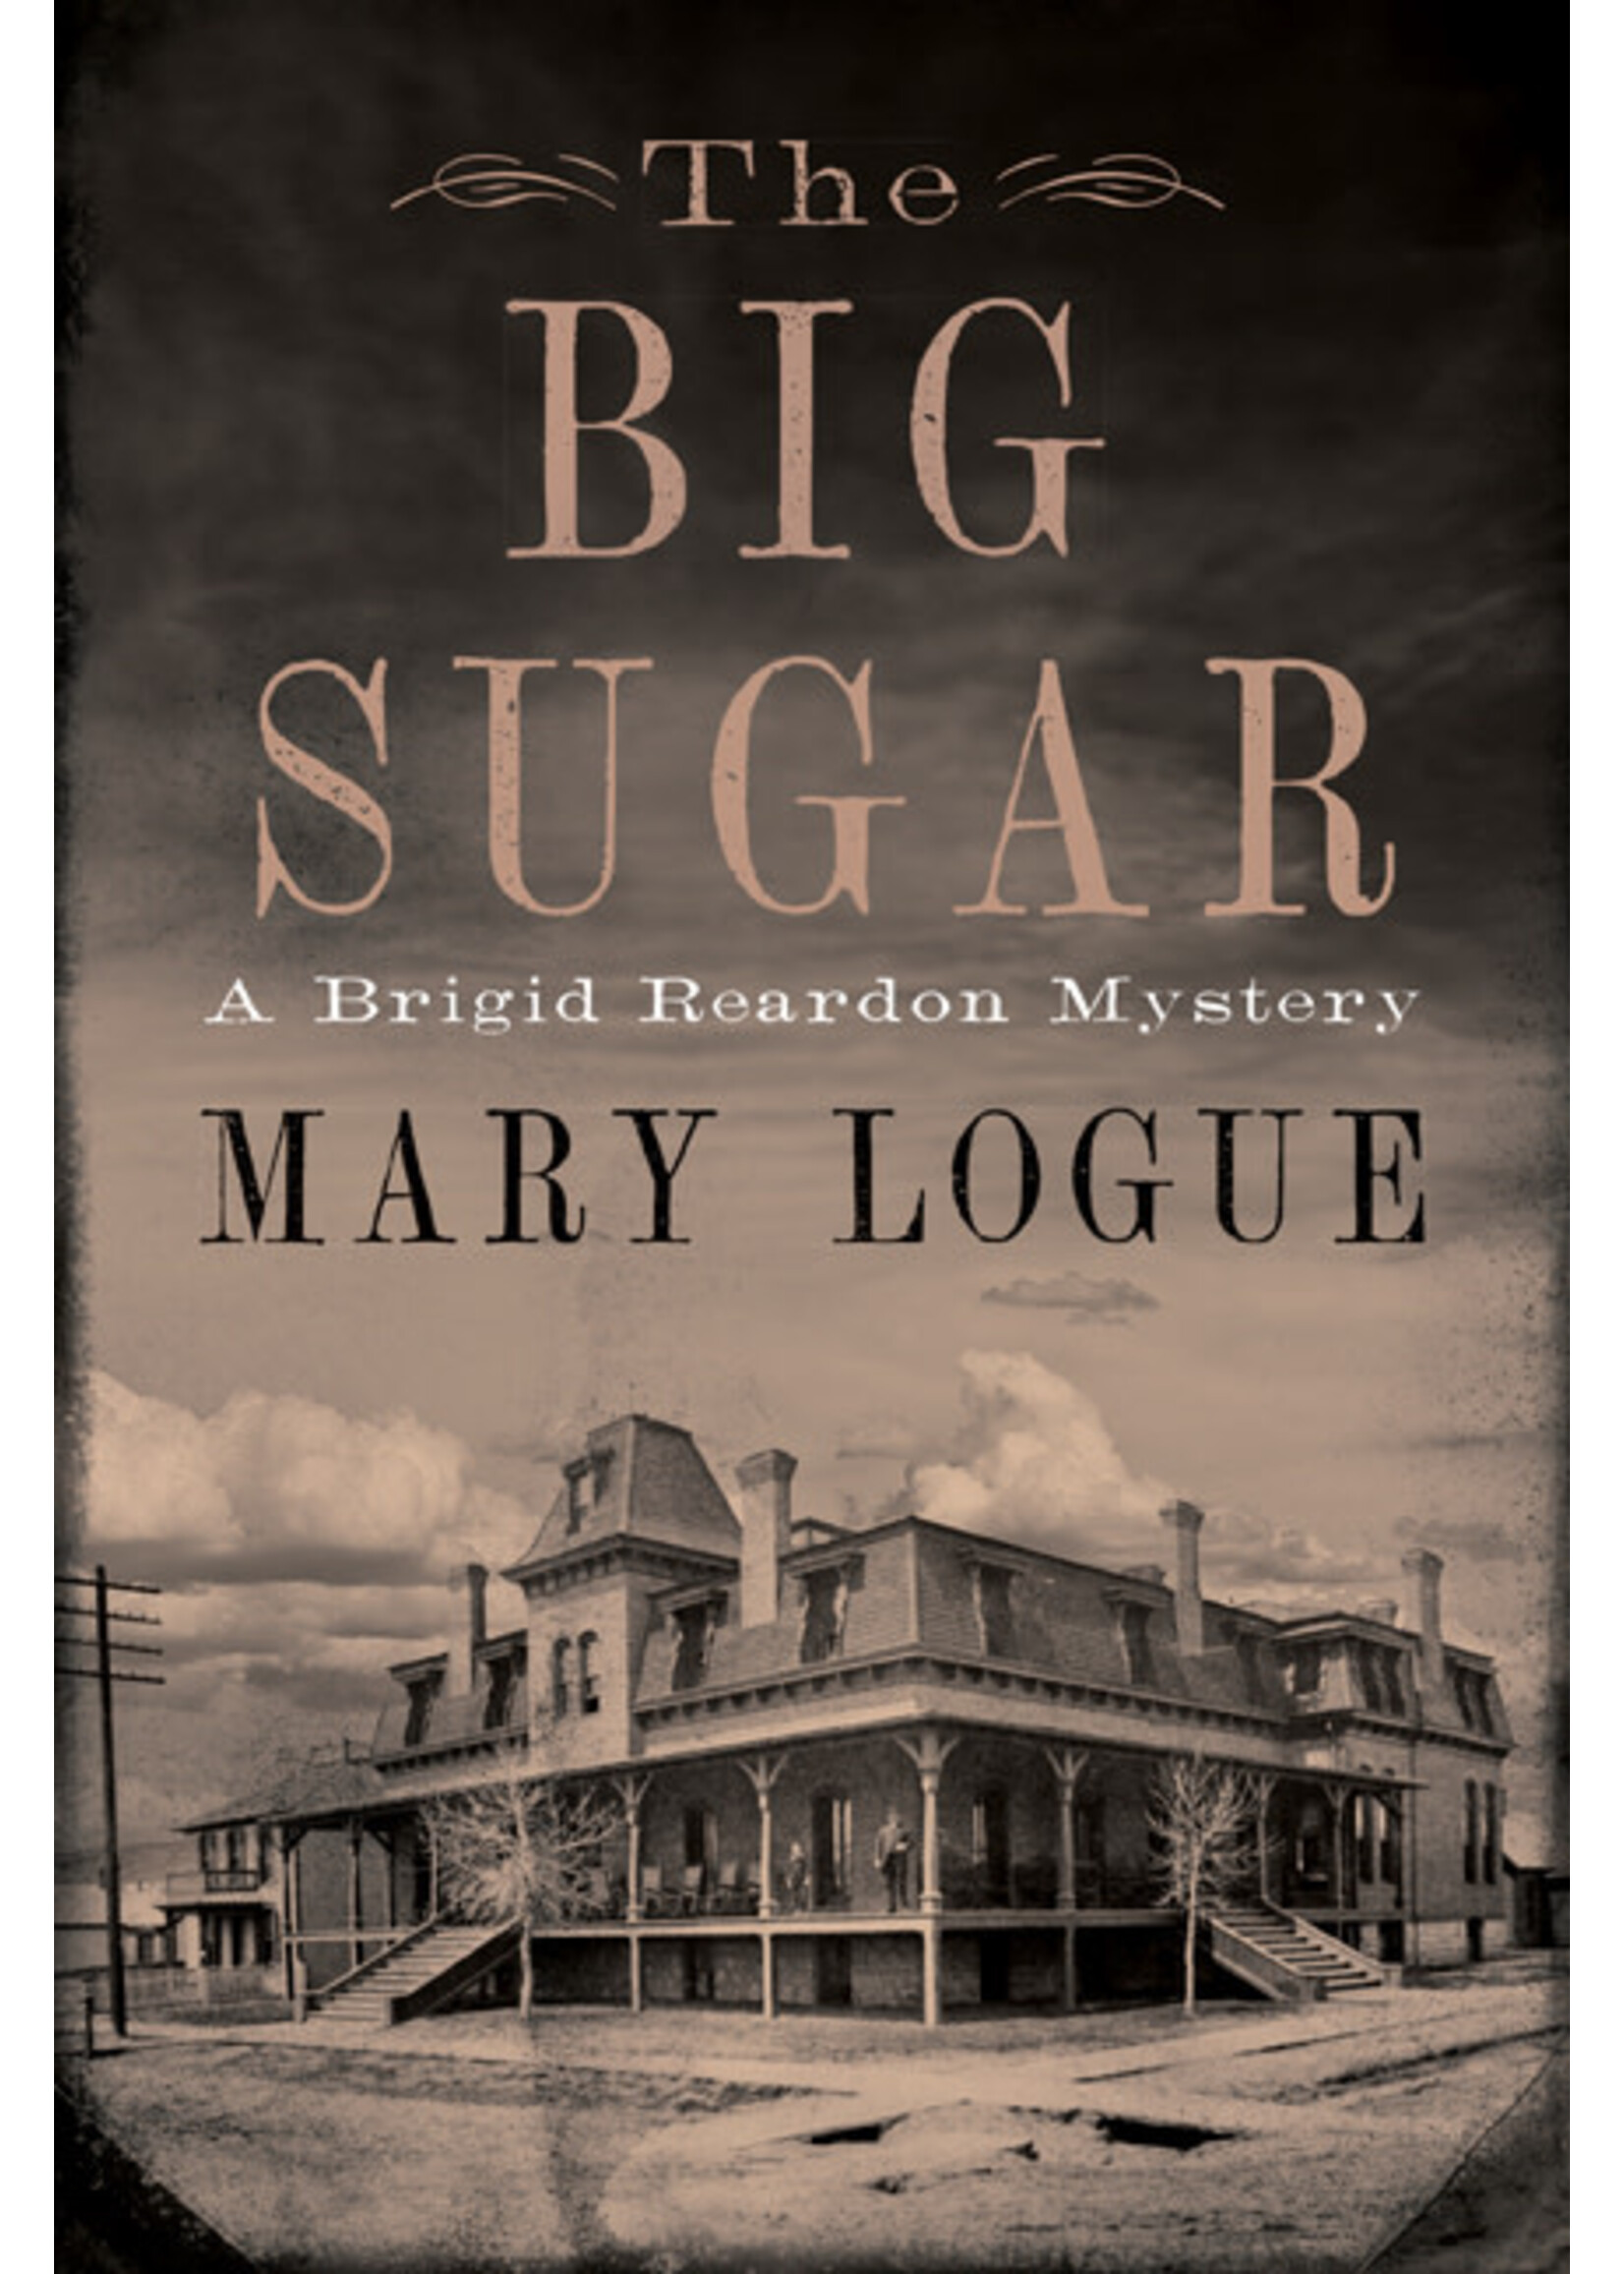 The Big Sugar: A Brigid Reardon Mystery by Mary Logue